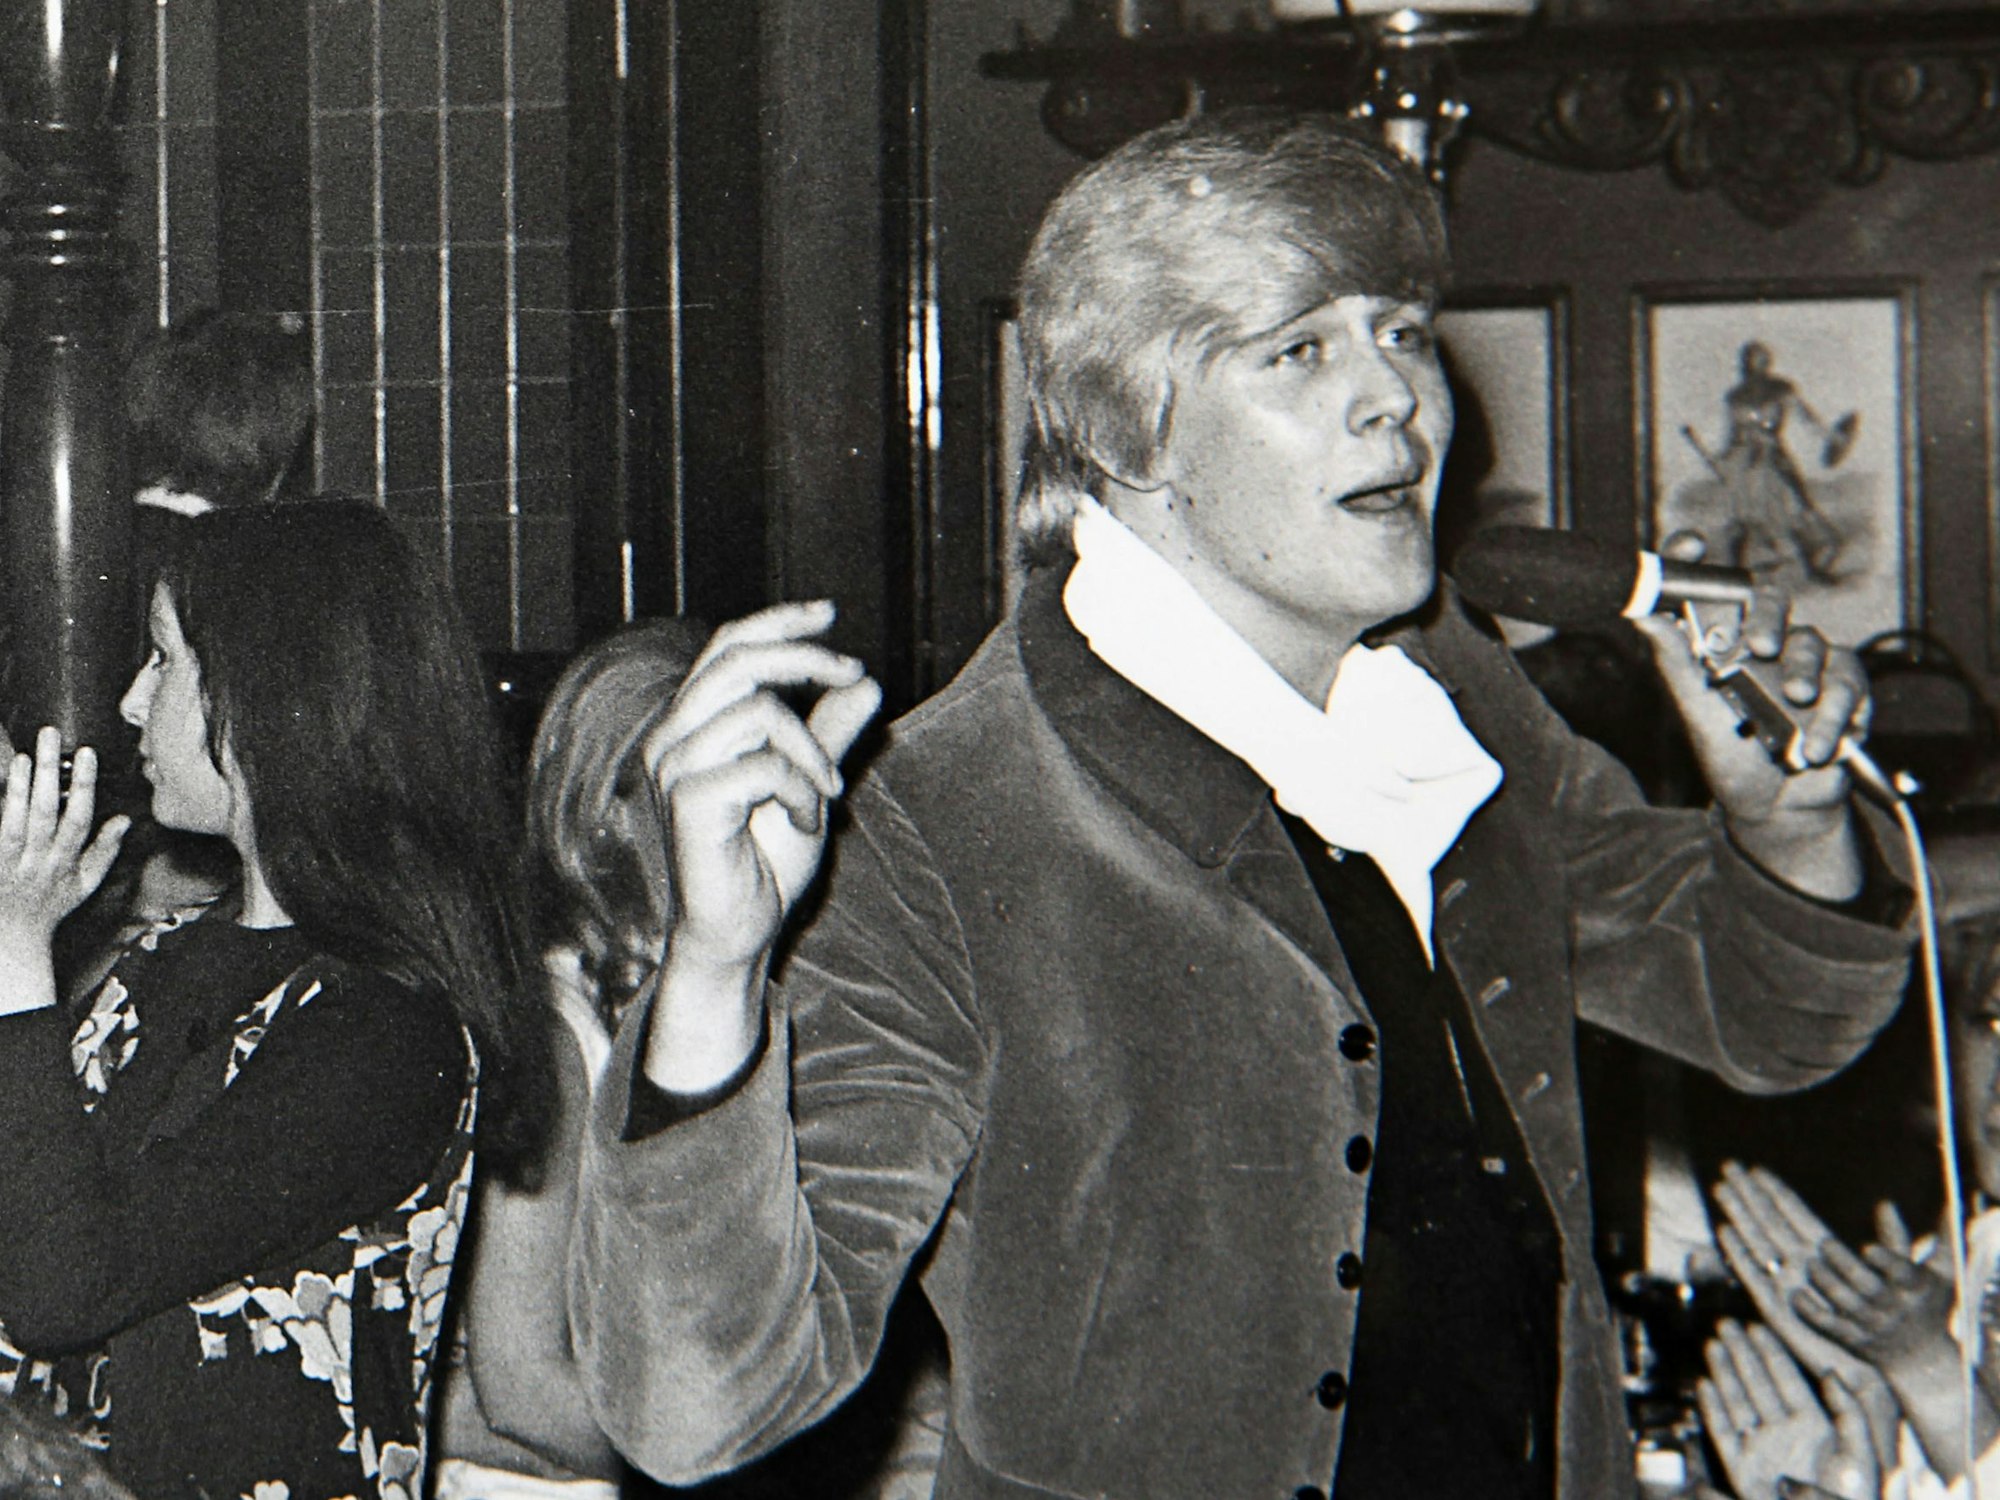 Der Schlagersänger Howard Carpendale (r) singt in der Discothek "Scotch Club" (Foto von 1965).